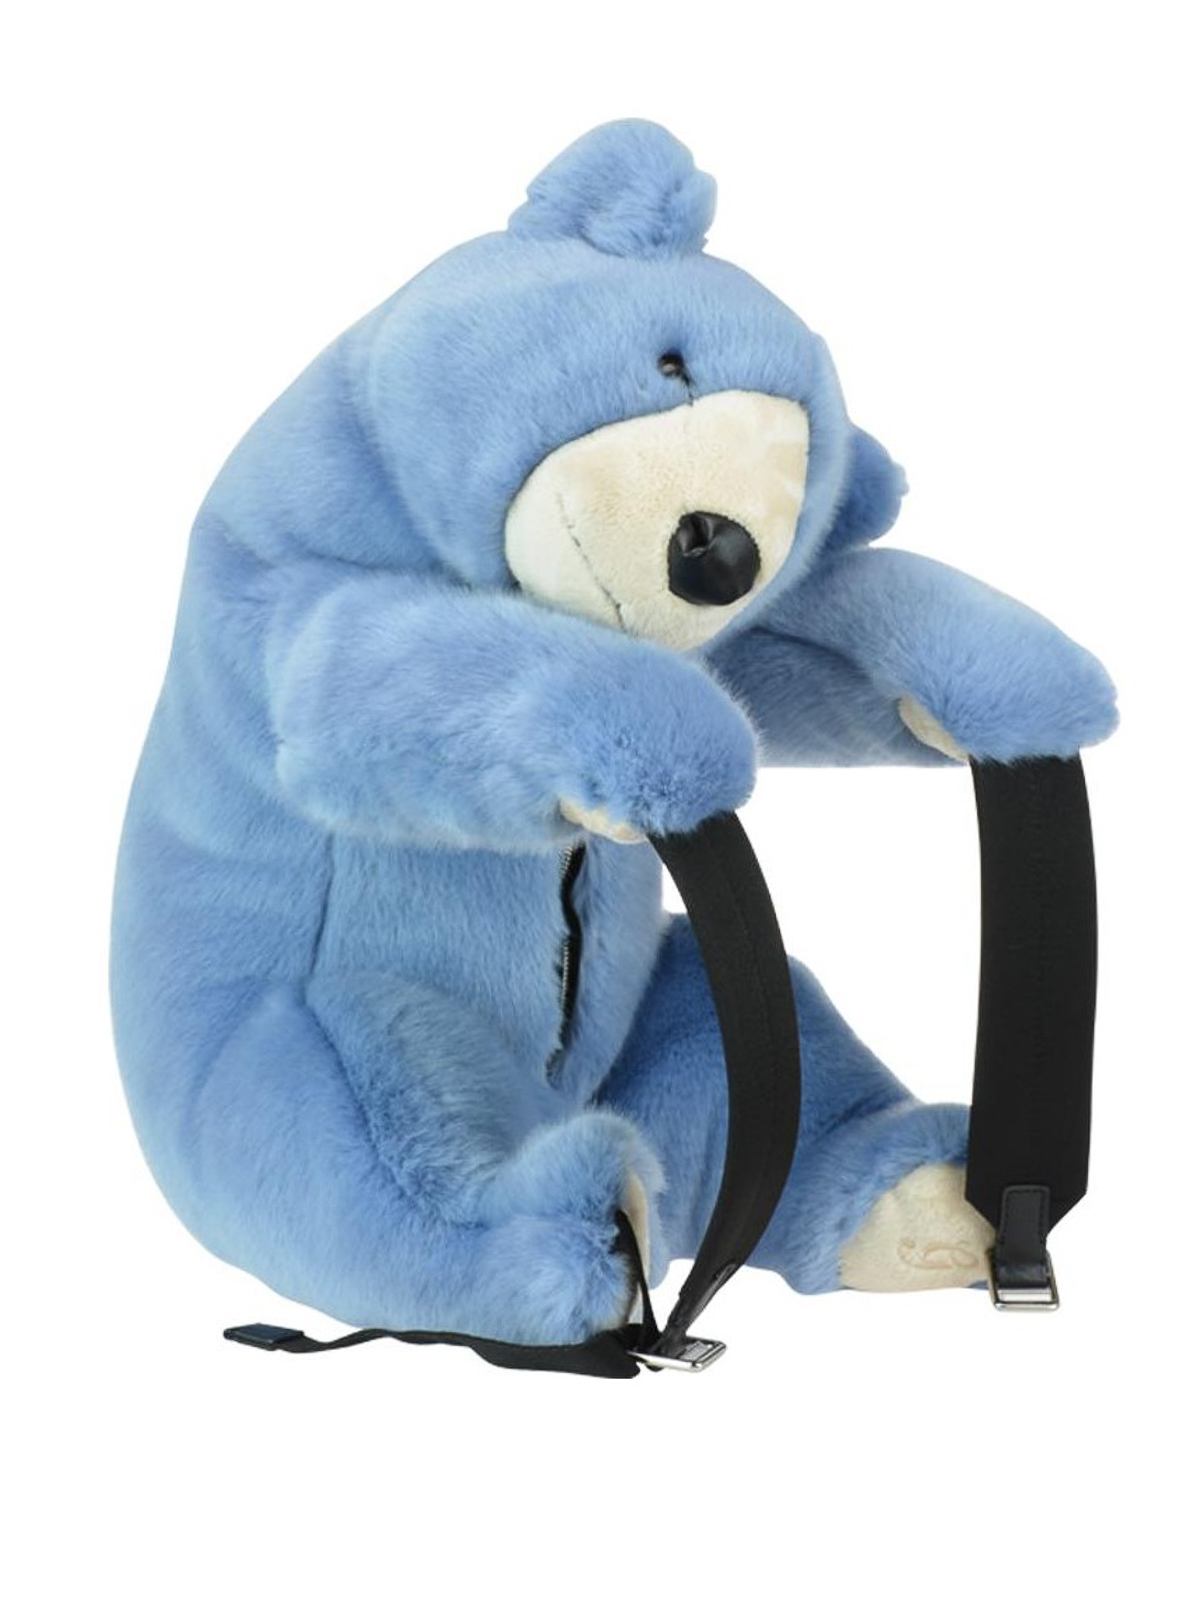 Backpacks Dolce & Gabbana - Fur effect Teddy bear backpack -  BB6409AU7278H422